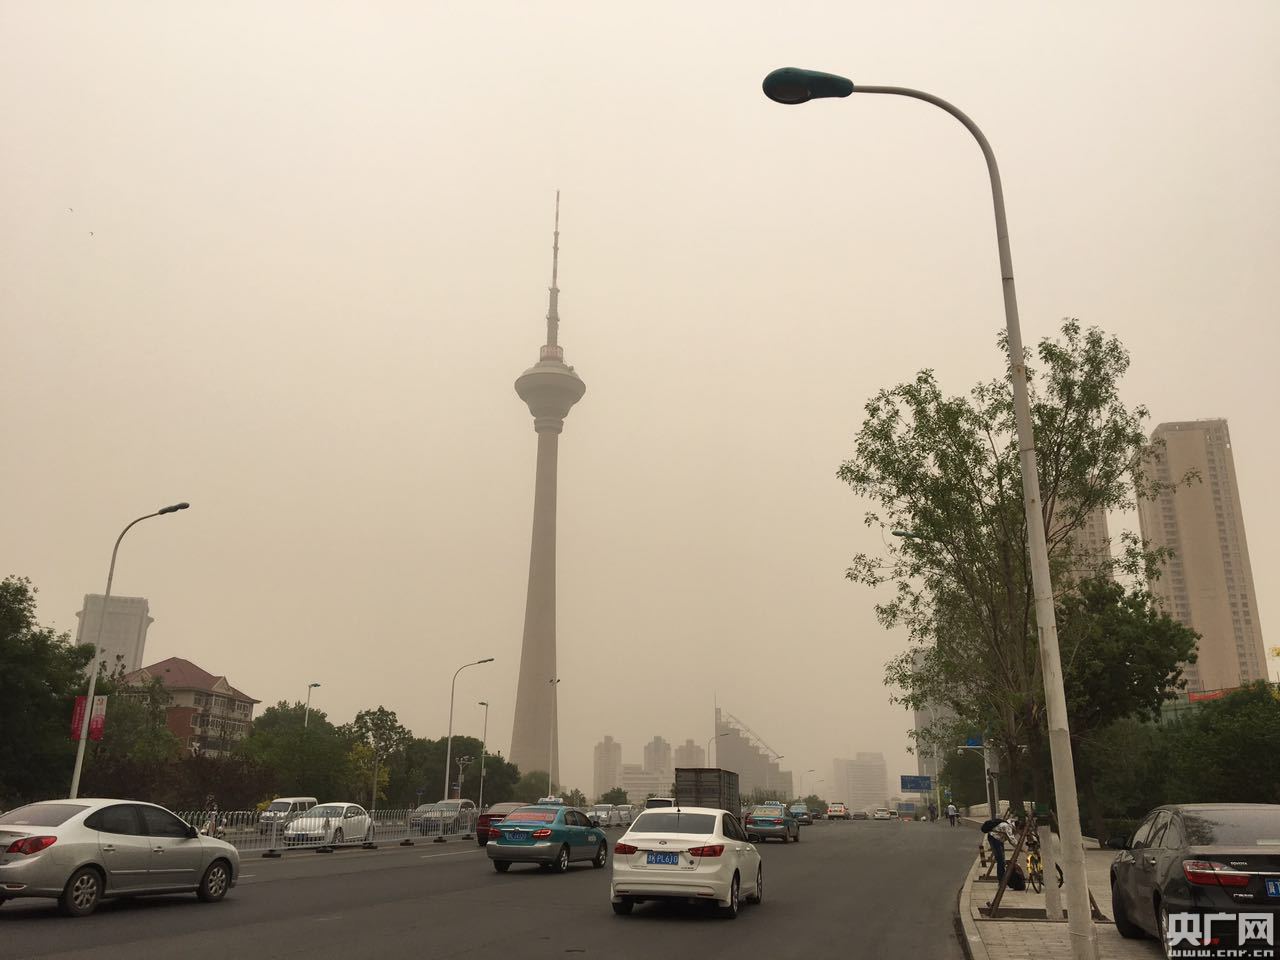 天津津南雾霾图片